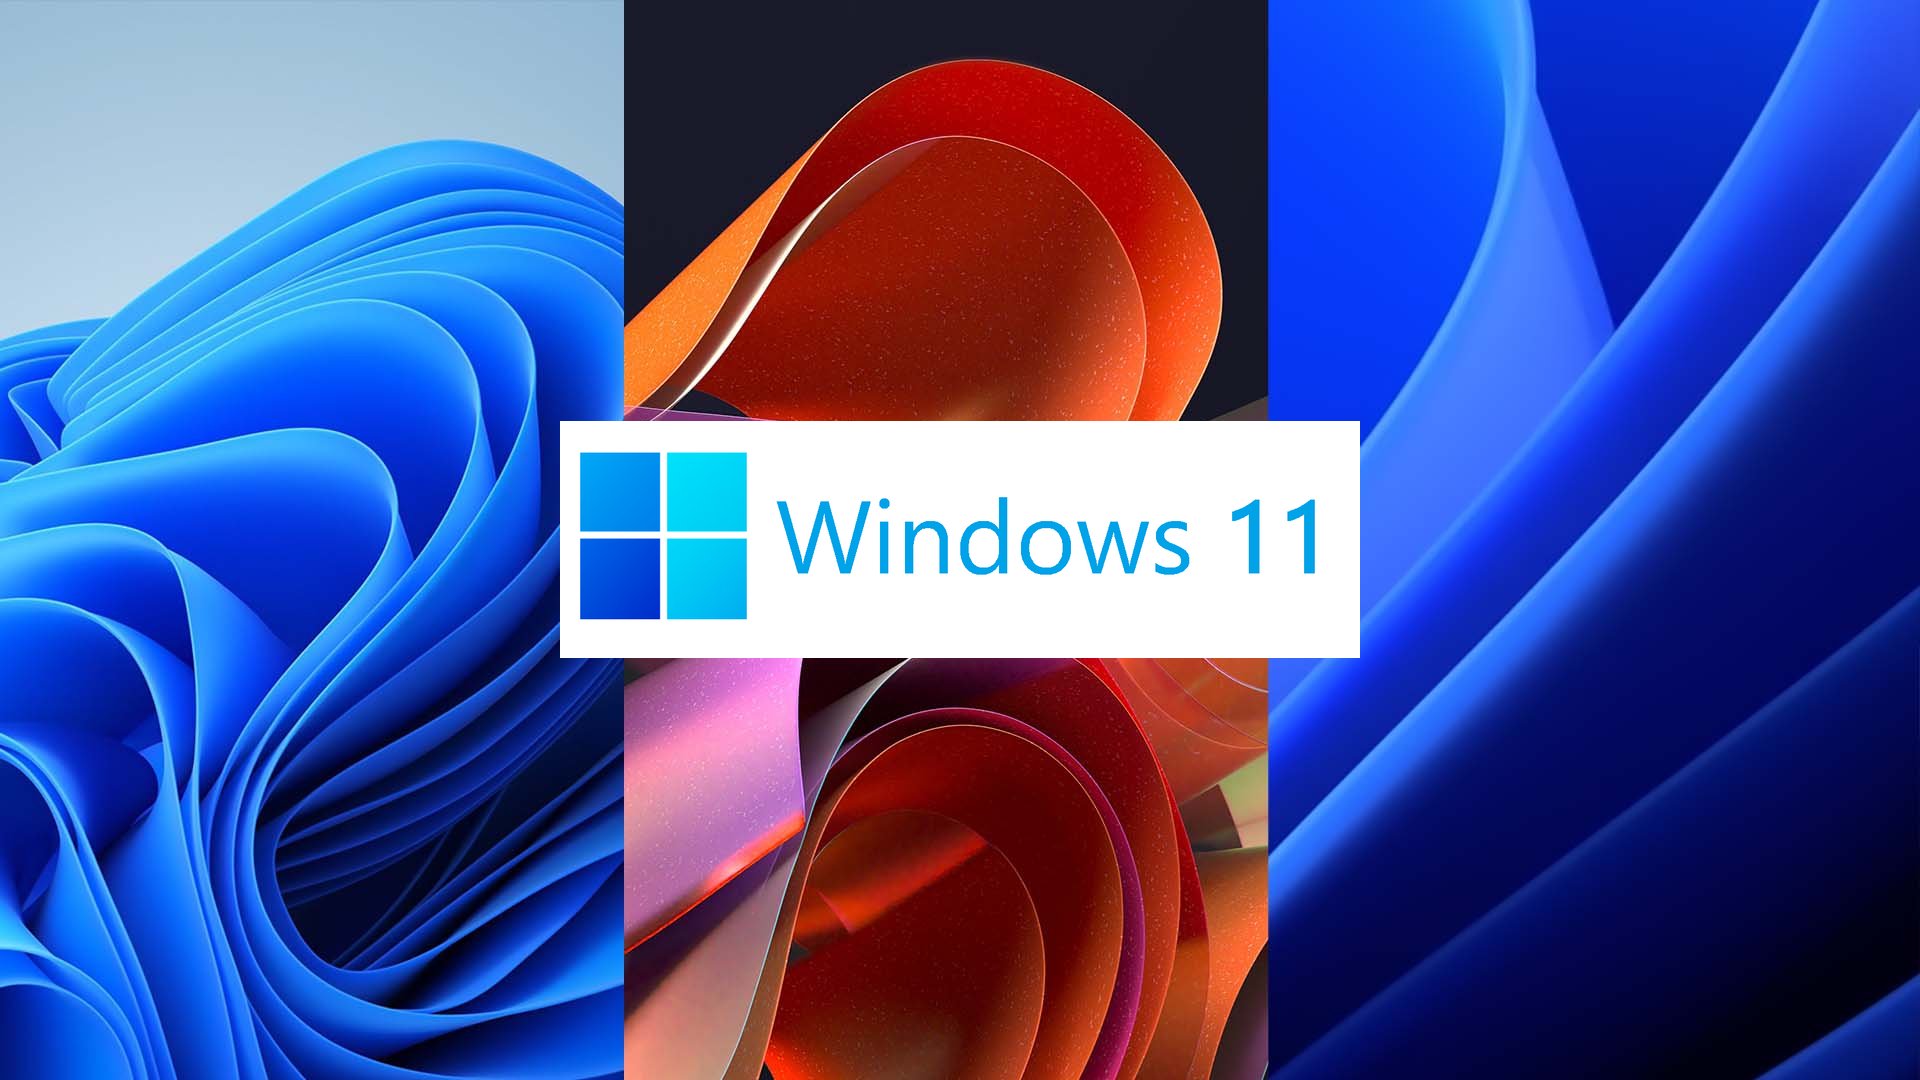 Hình nền Win 11 4K cực đẹp - Ảnh nền windows 11 đẹp nhất